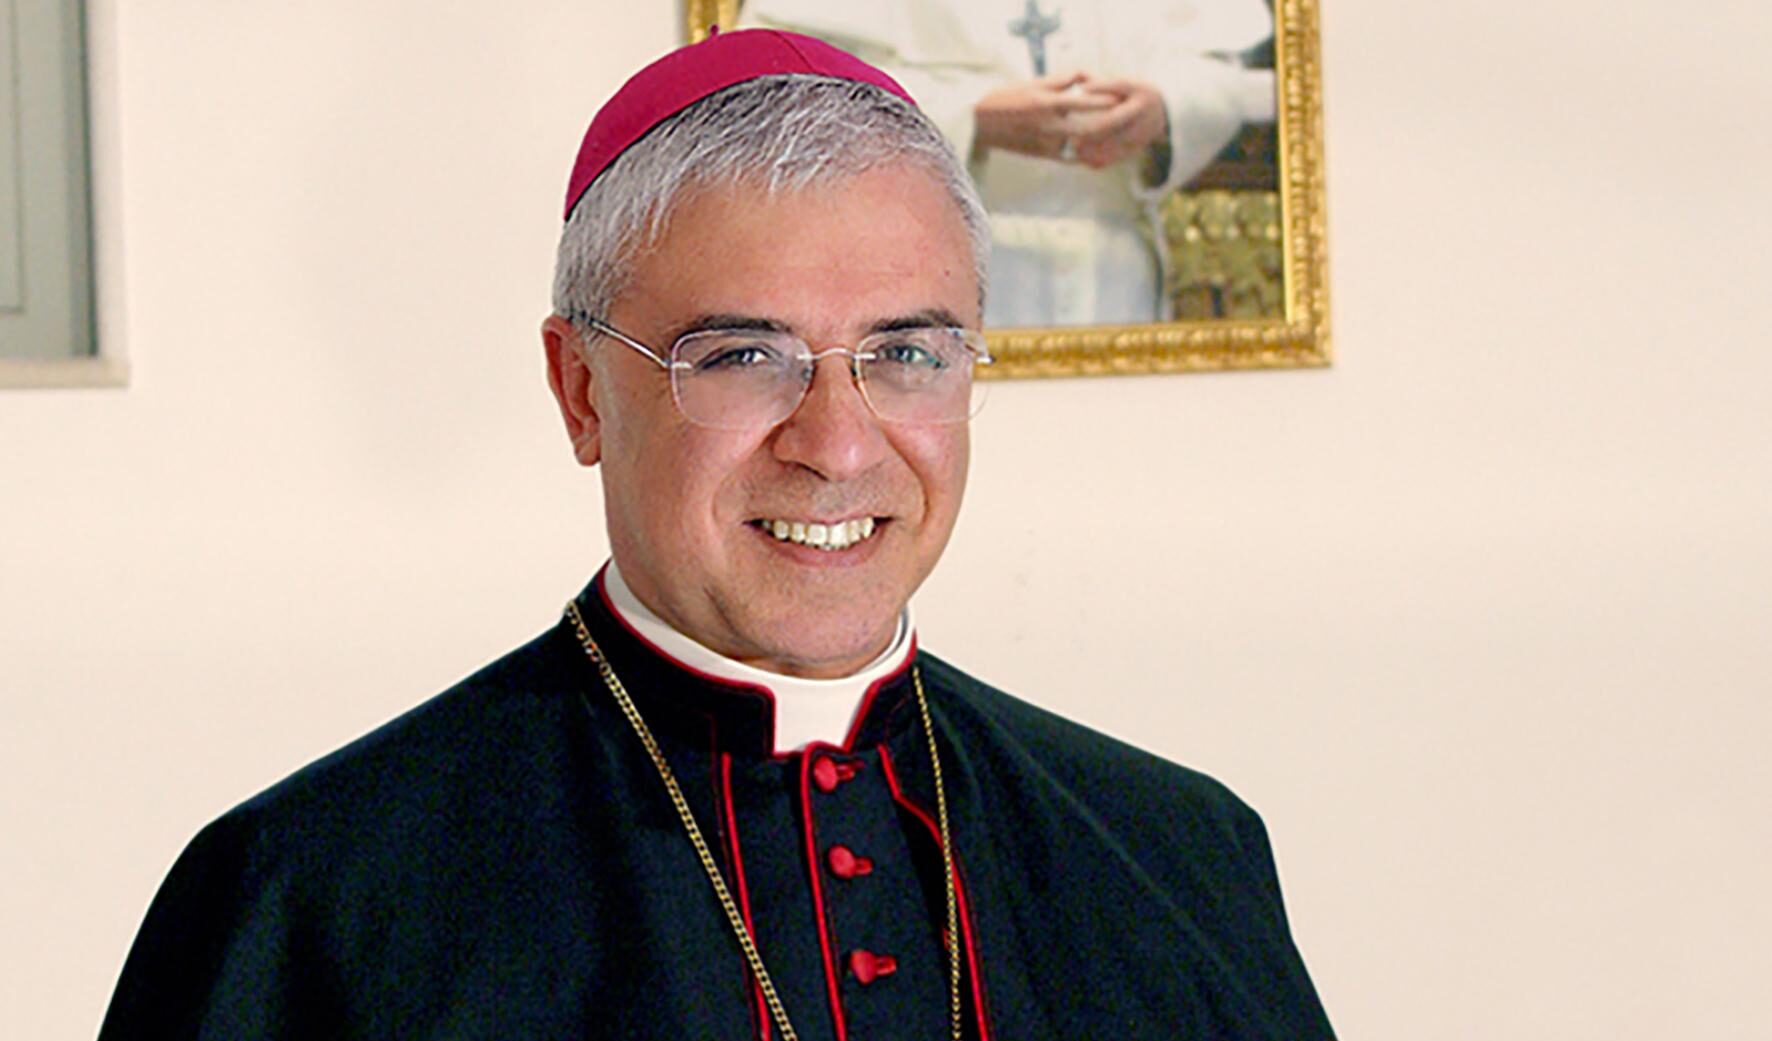 L'arcivescovo di Catania si dice 'orgoglioso' della sentenza della giudice Apostolico